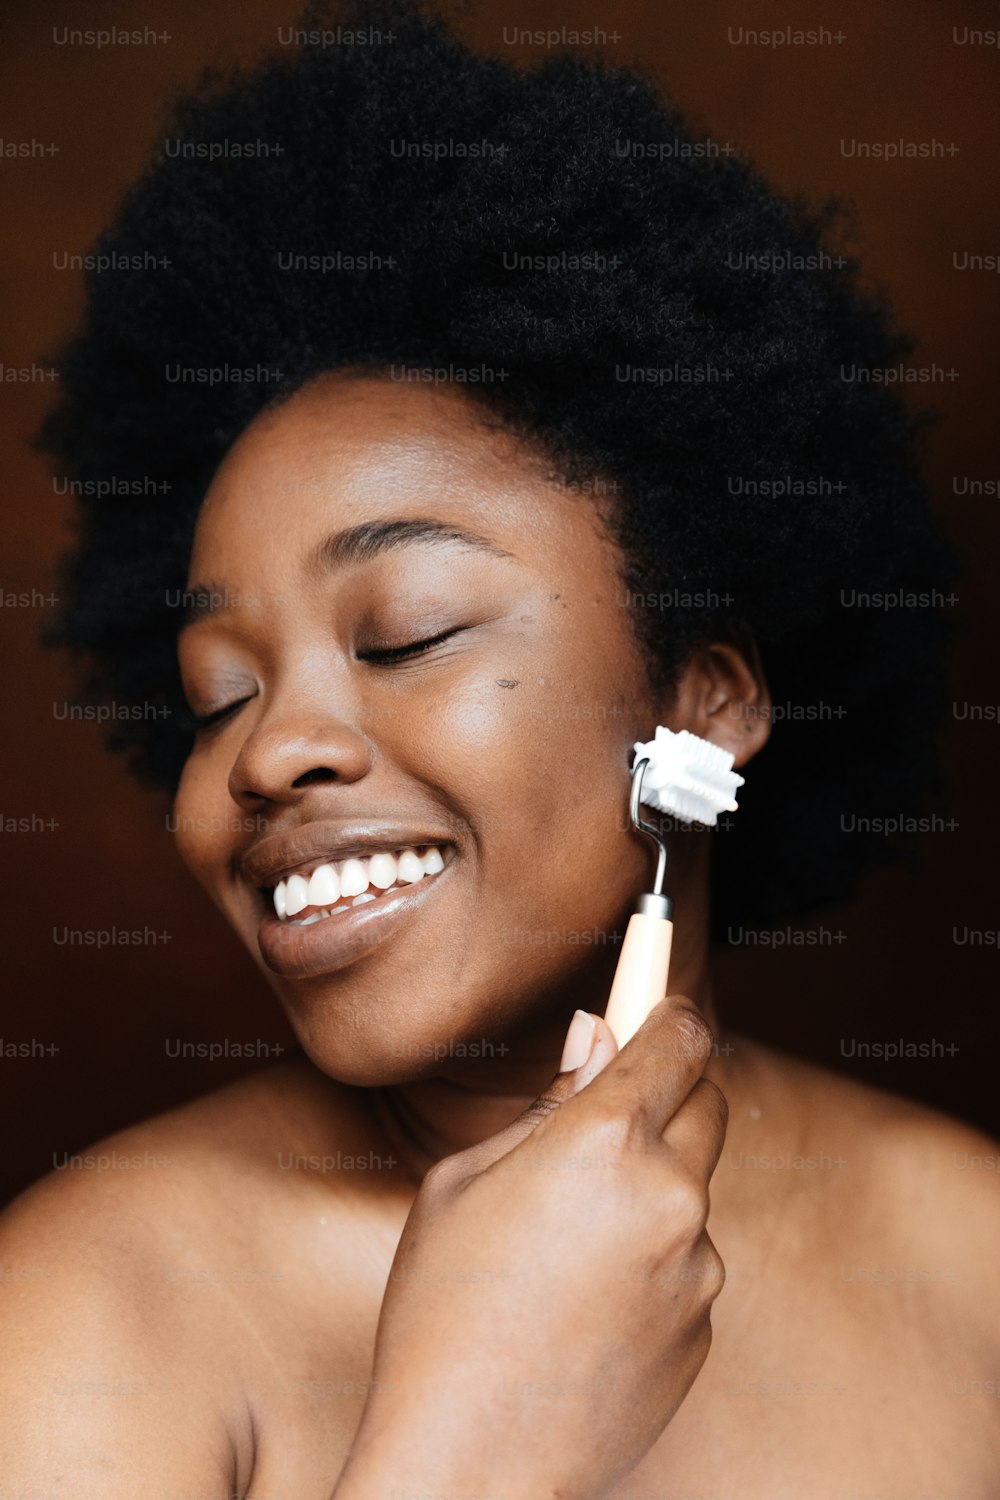 Eine Frau, die sich mit einer elektrischen Zahnbürste die Zähne putzt